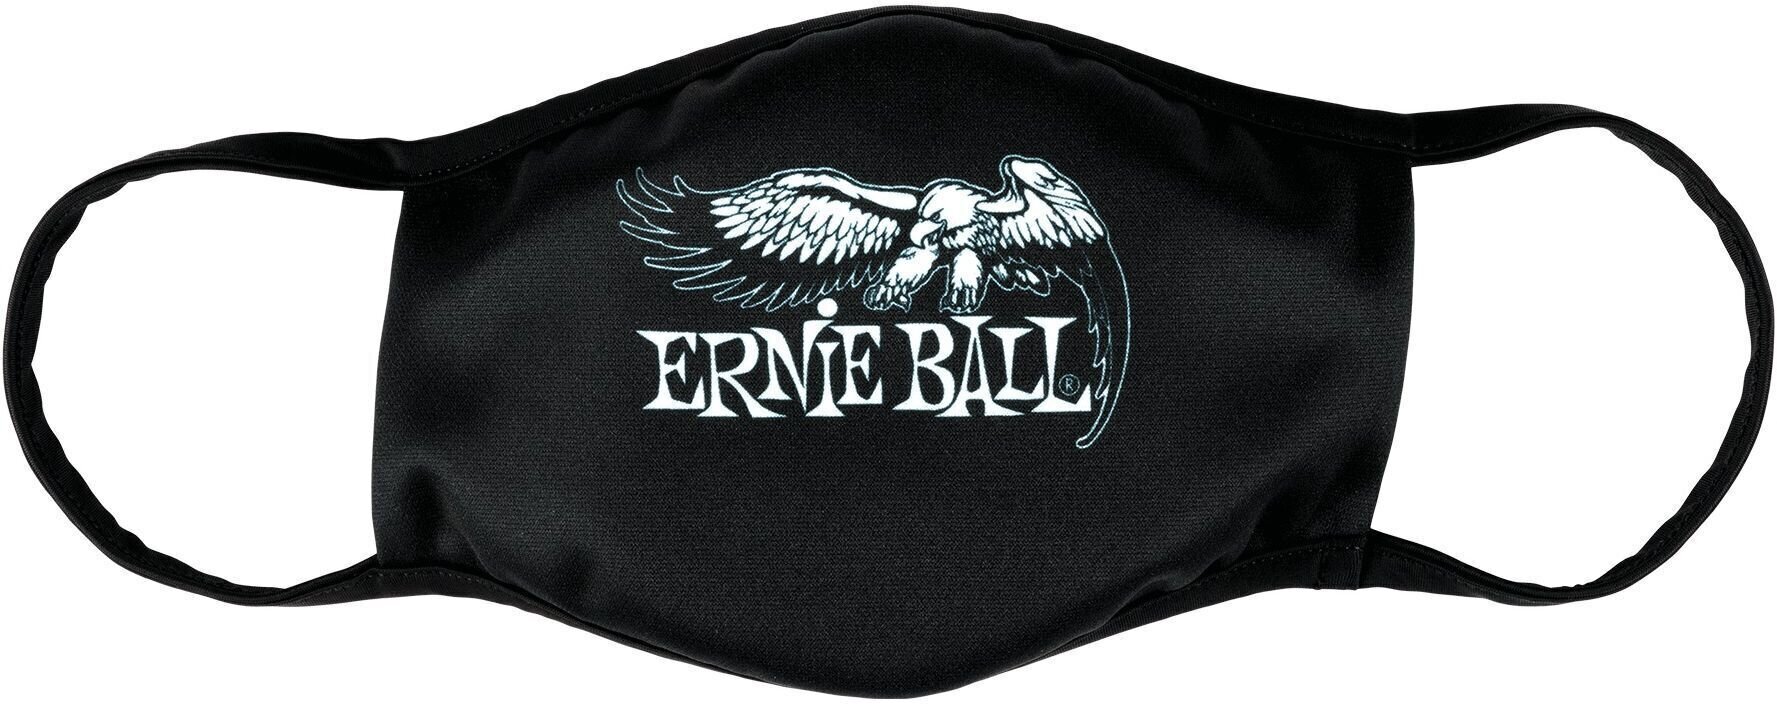 Mask Ernie Ball 4908 Mask